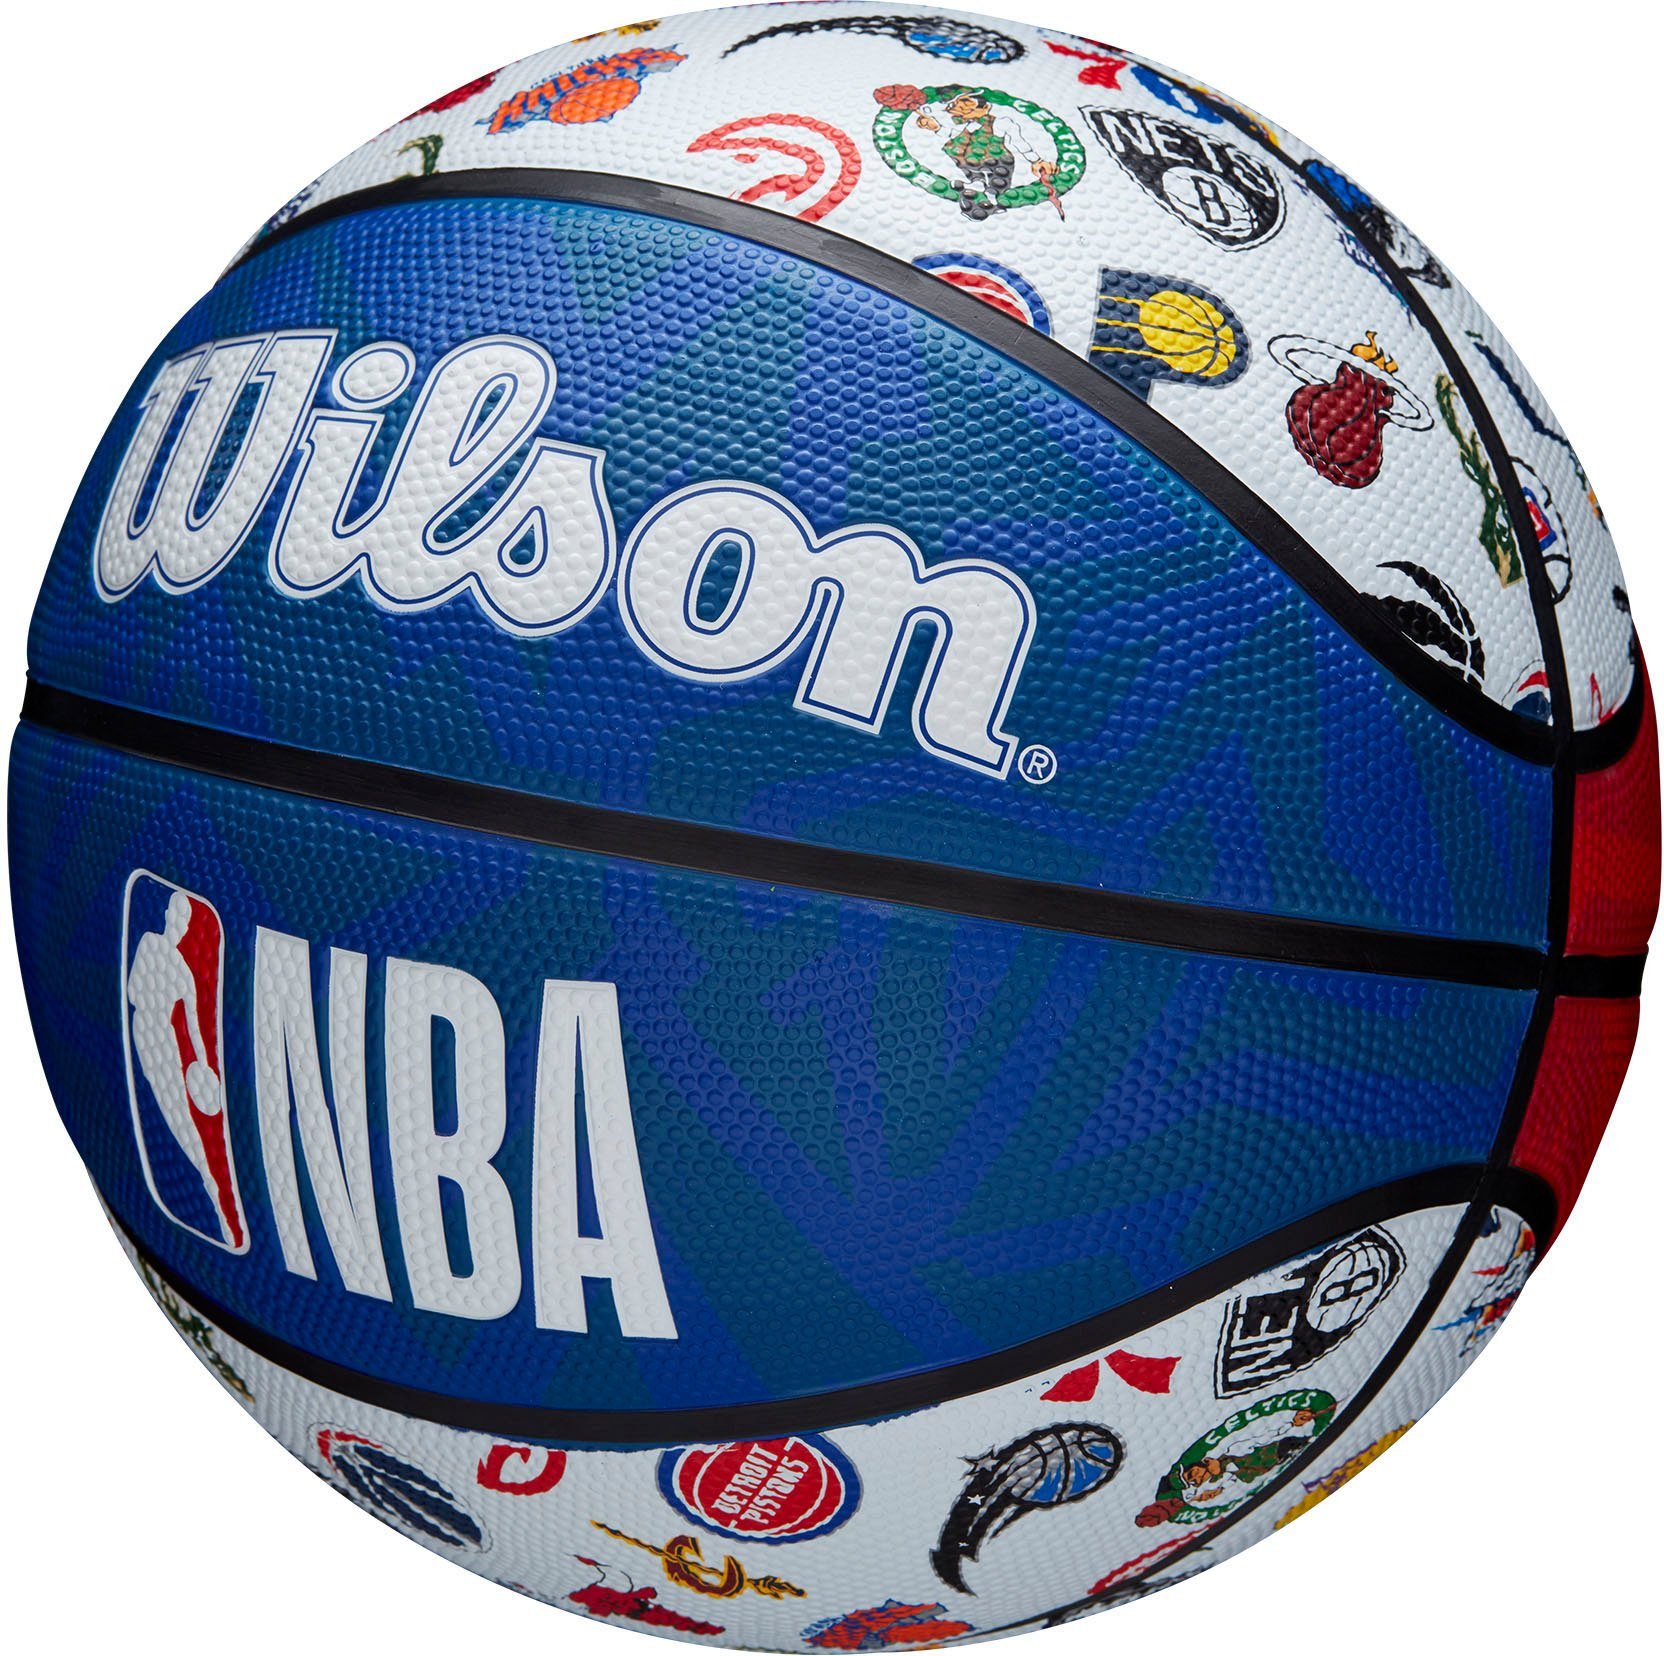 XTREM toys & sports Wilson ALL NBA Basketball RWB SZ7 BSKT TEAM